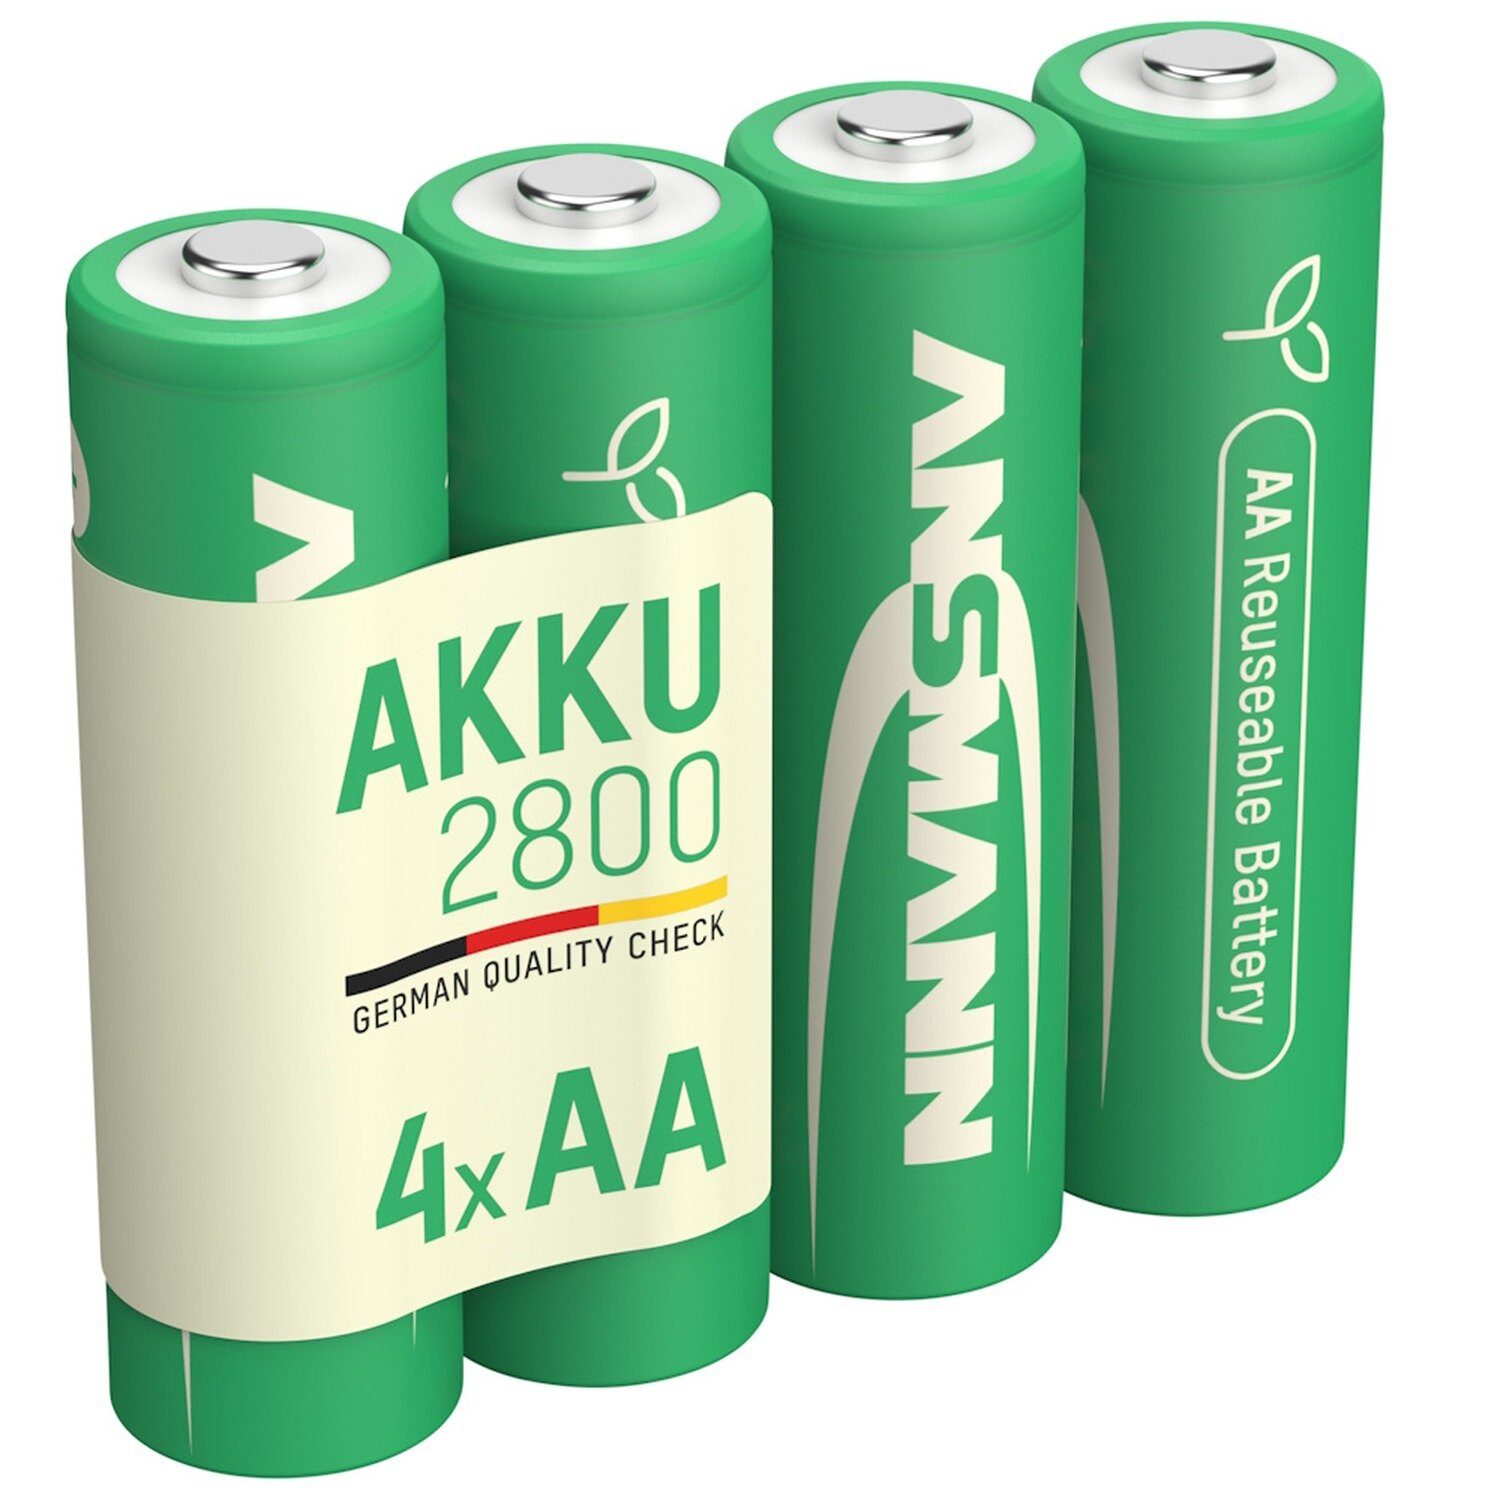 ANSMANN® Akku Green-Pro Range AA Ni-MH 2800 – 4 Stück Akku